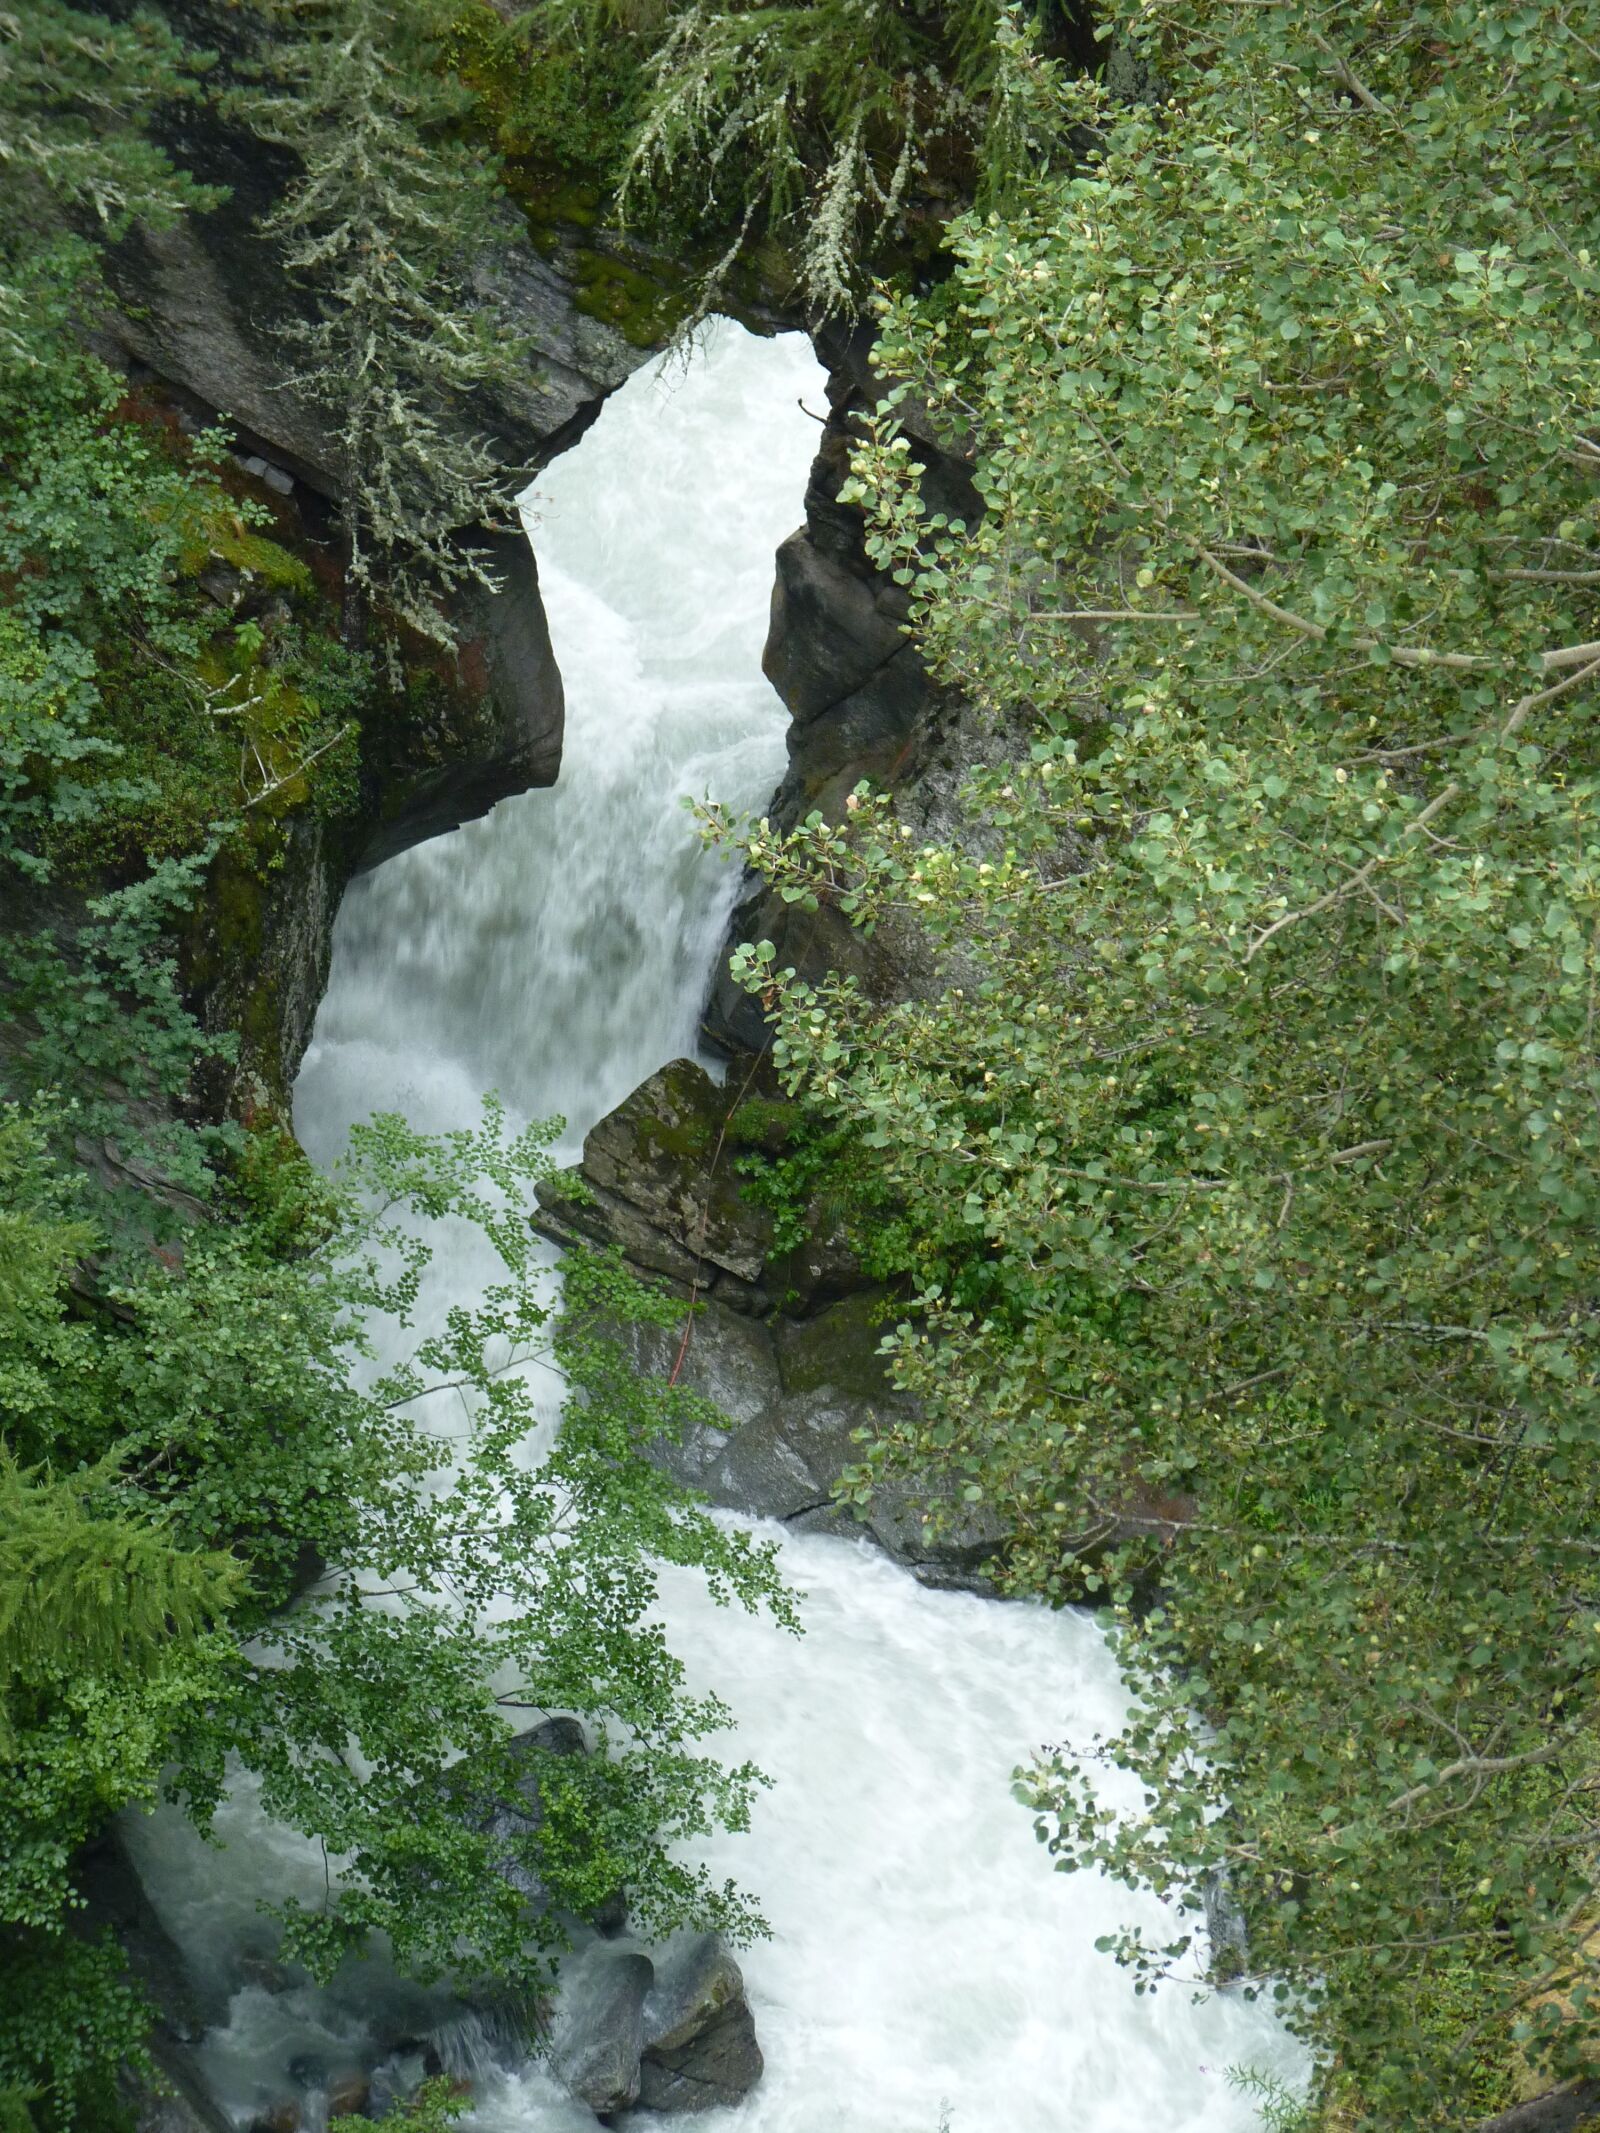 Panasonic Lumix DMC-FZ35 (Lumix DMC-FZ38) sample photo. Waterfall, switzerland, landscape photography